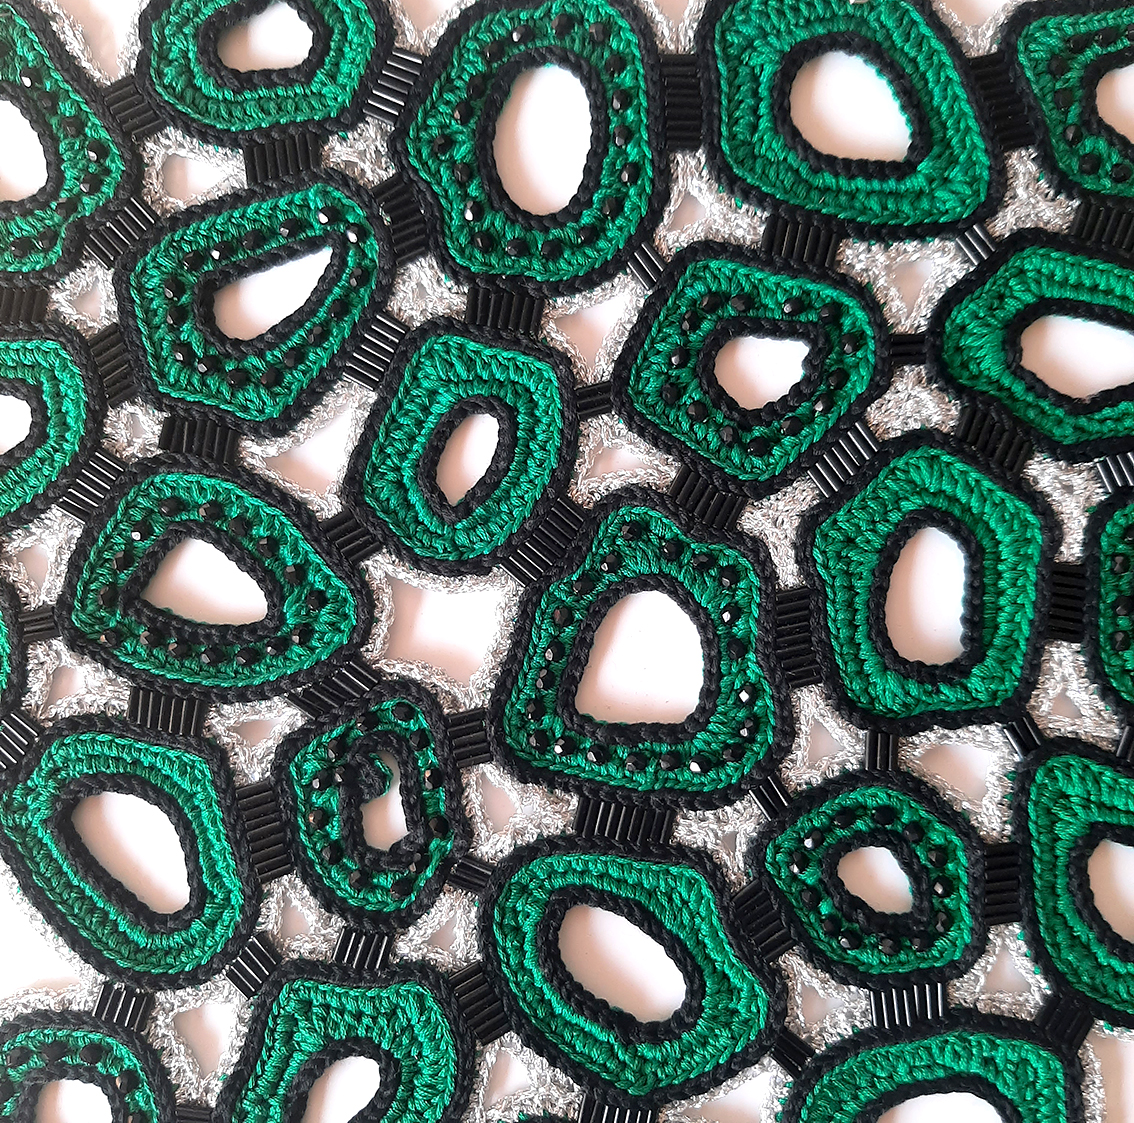 Eléments en coton et lurex crocheté rebrodés de perles et tubes